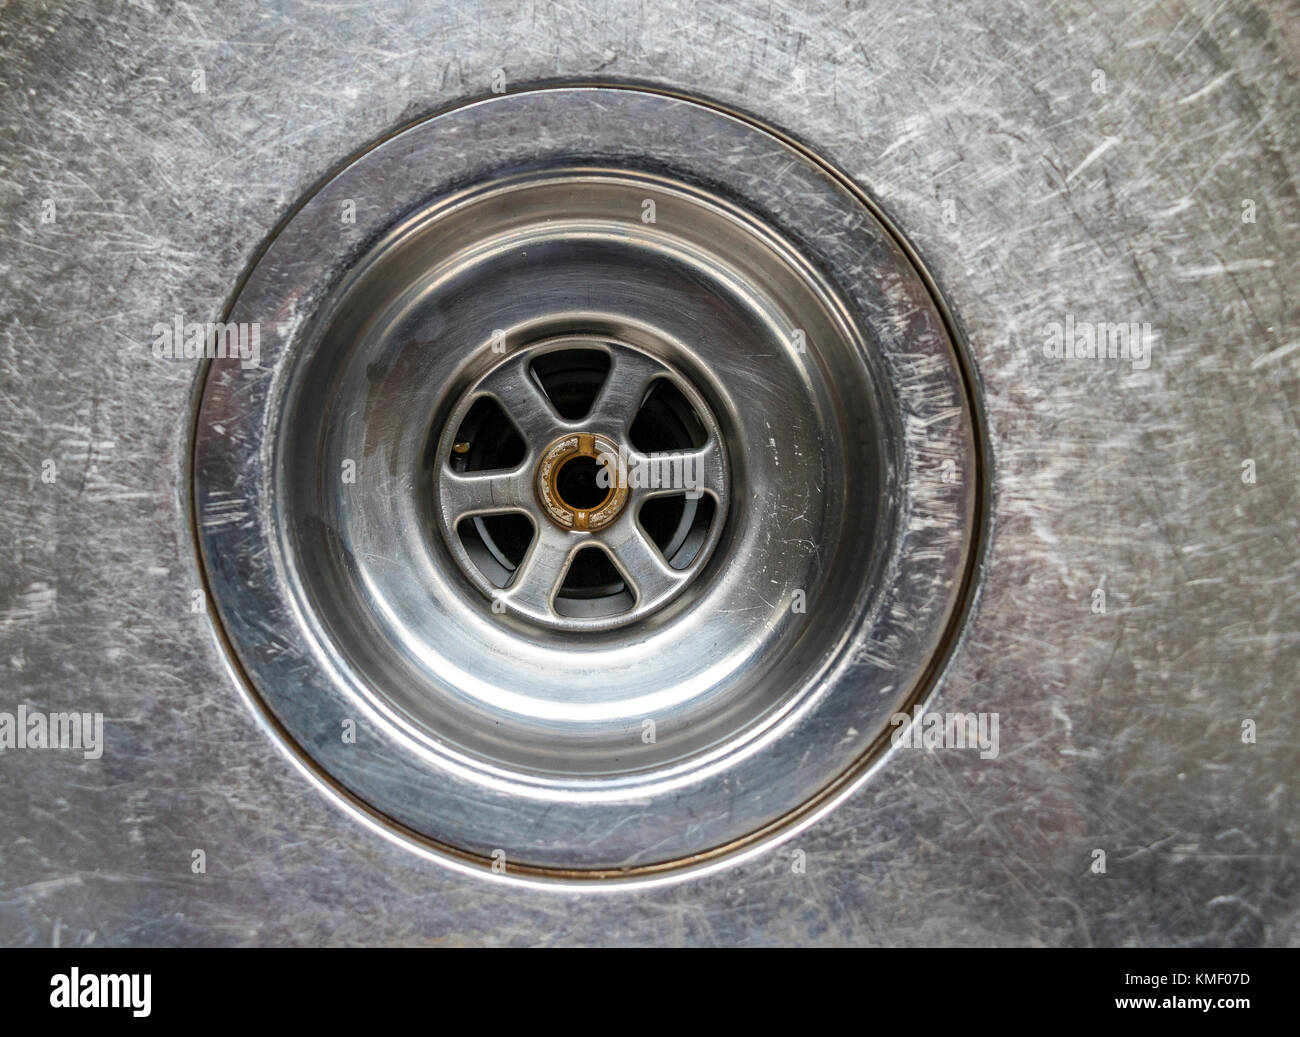 Nahaufnahme von einem Waschbecken aus Edelstahl Stecker Bohrung Stockfoto